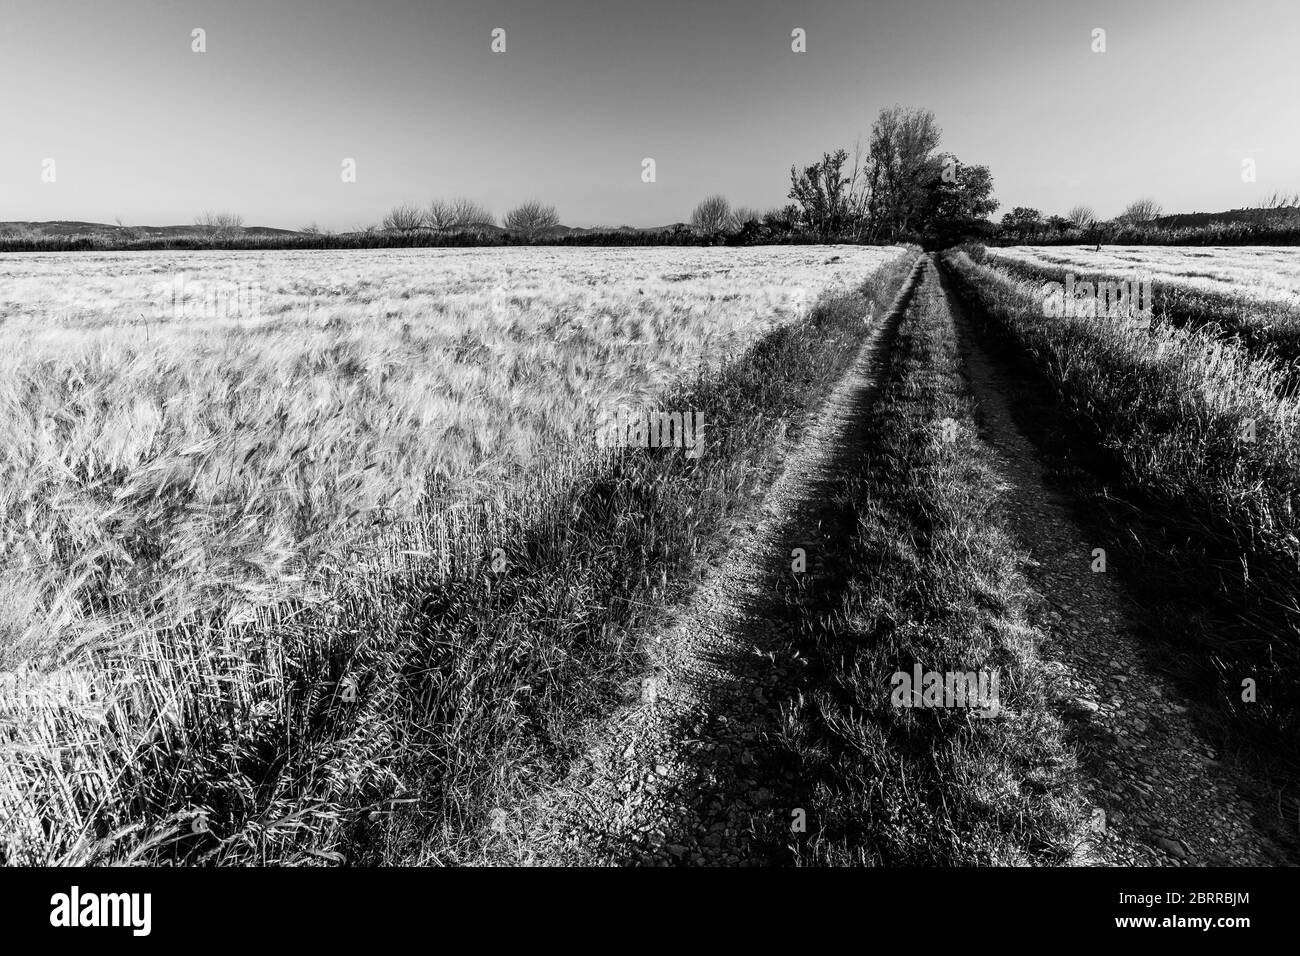 Un chemin au milieu d'un champ cultivé plein de blé doré avec quelques arbres à distance, sous un ciel bleu Banque D'Images